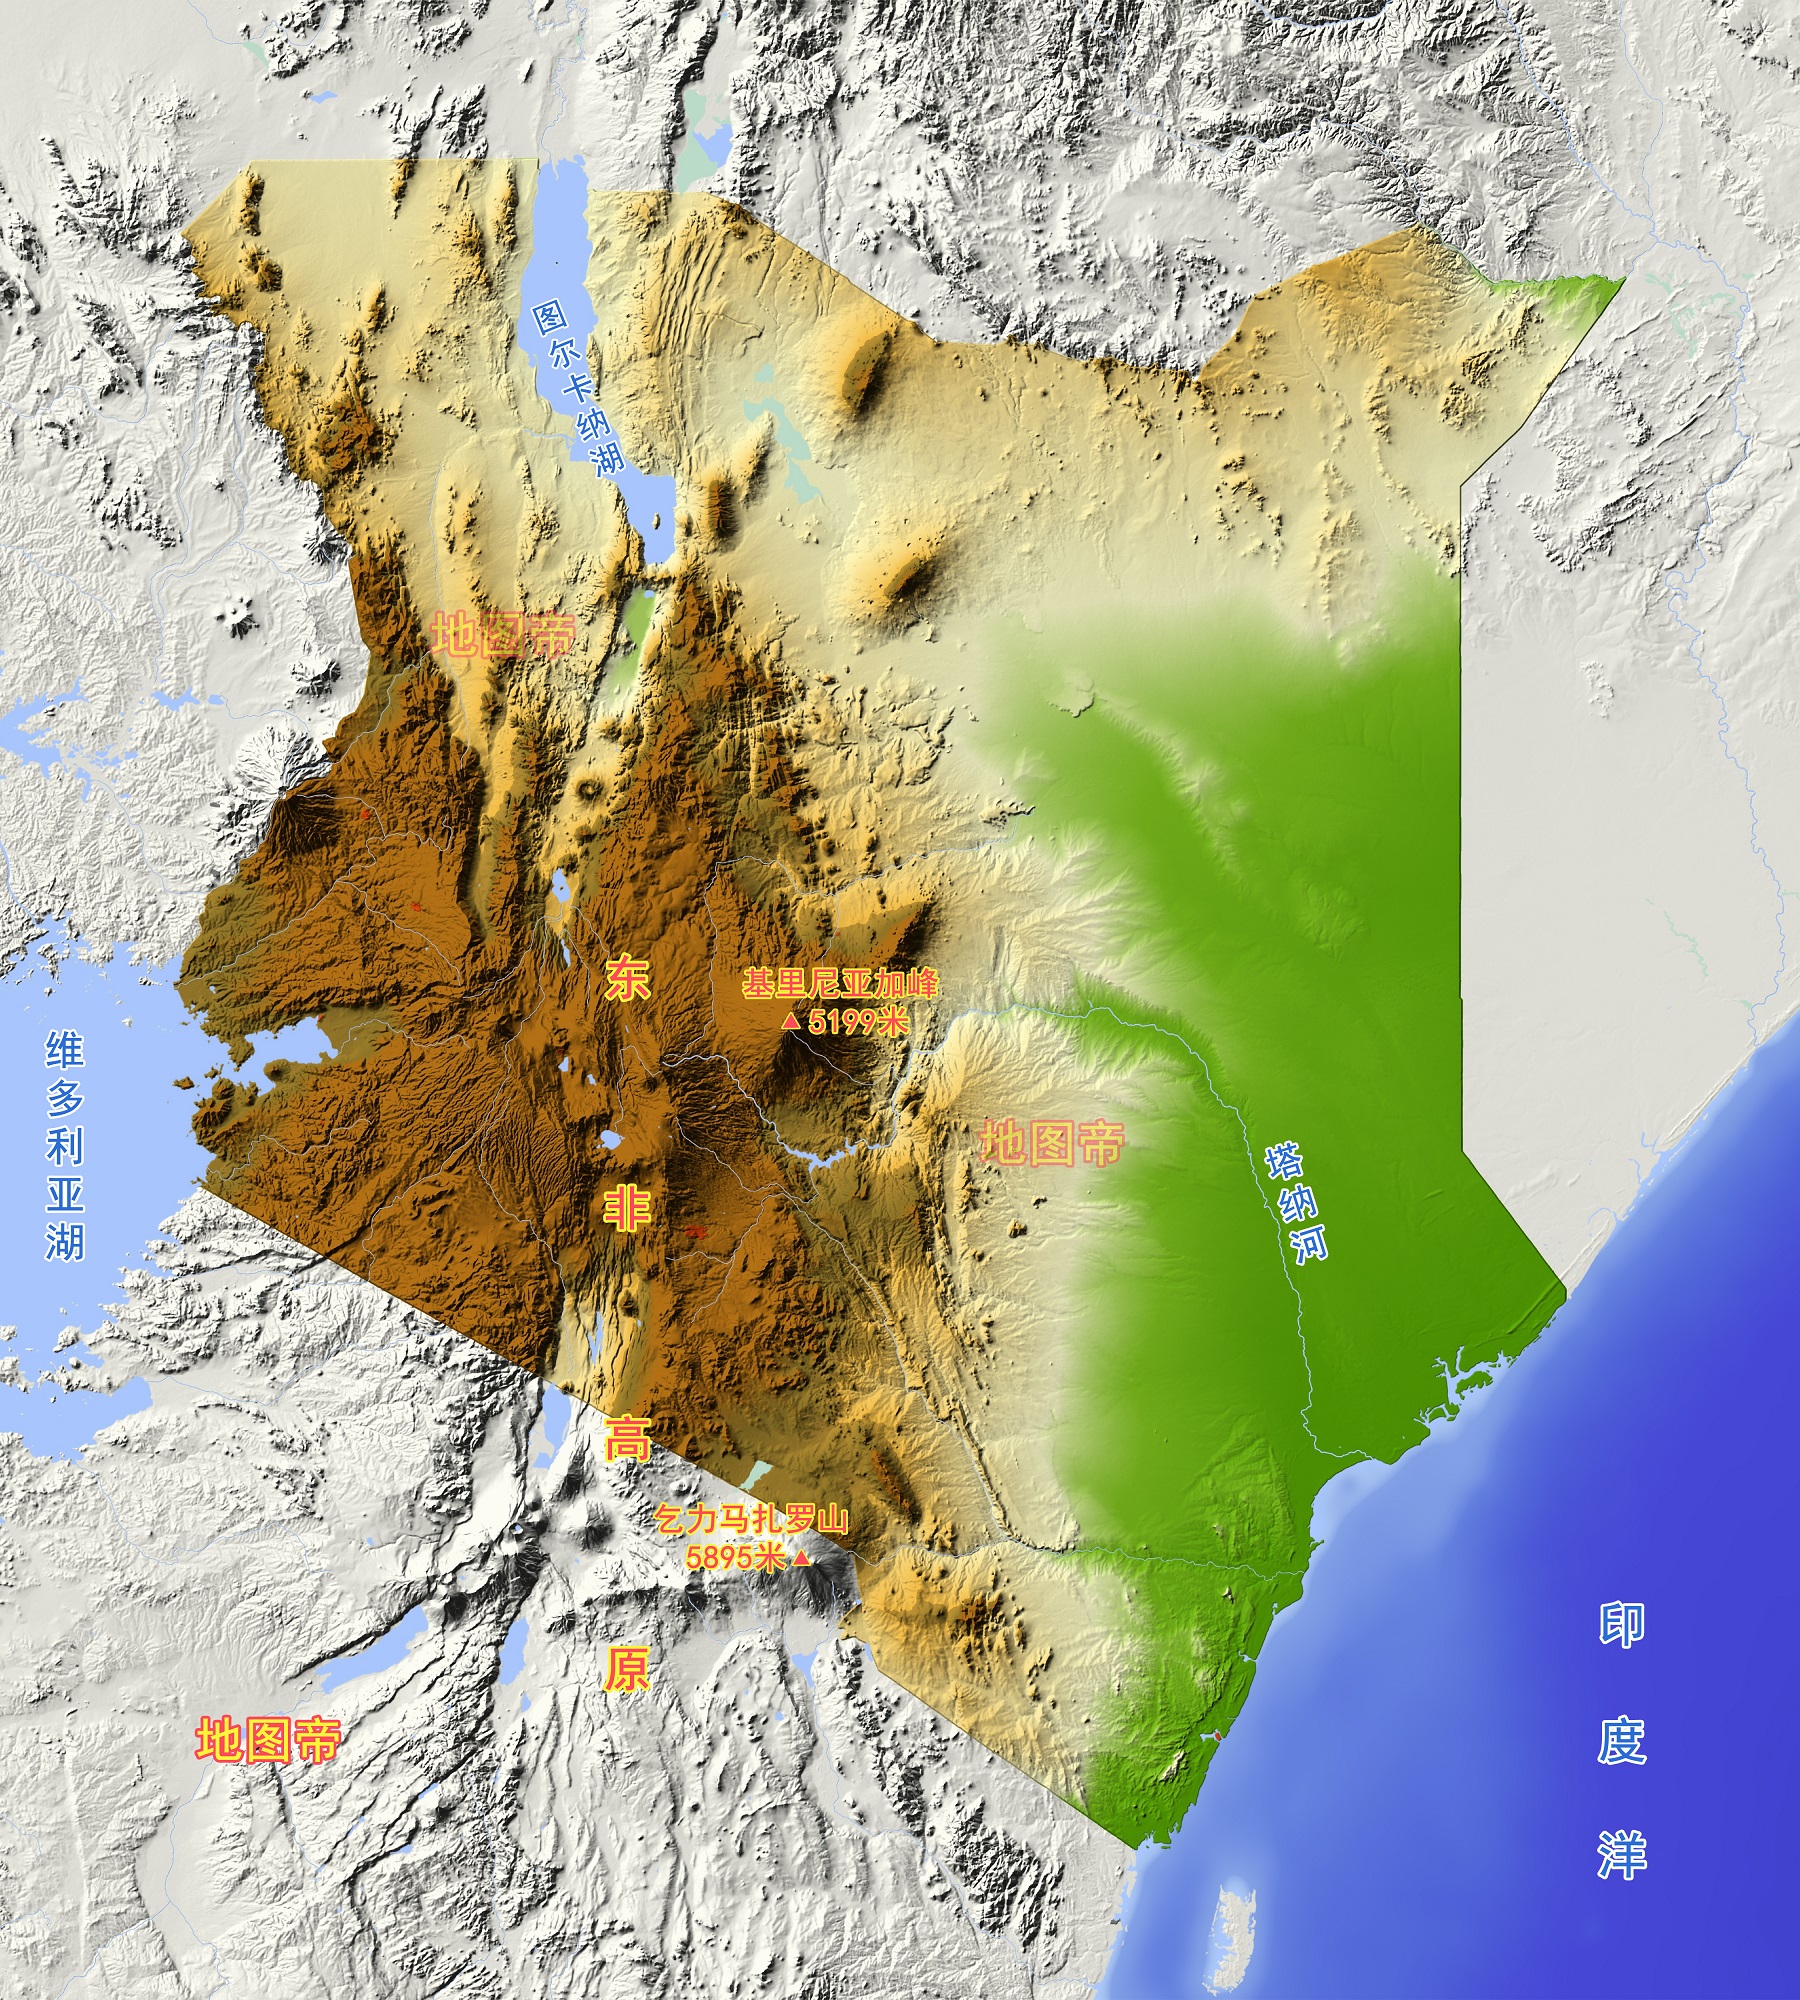 原创非洲肯尼亚,位于东非大裂谷上,为何野生动物多?